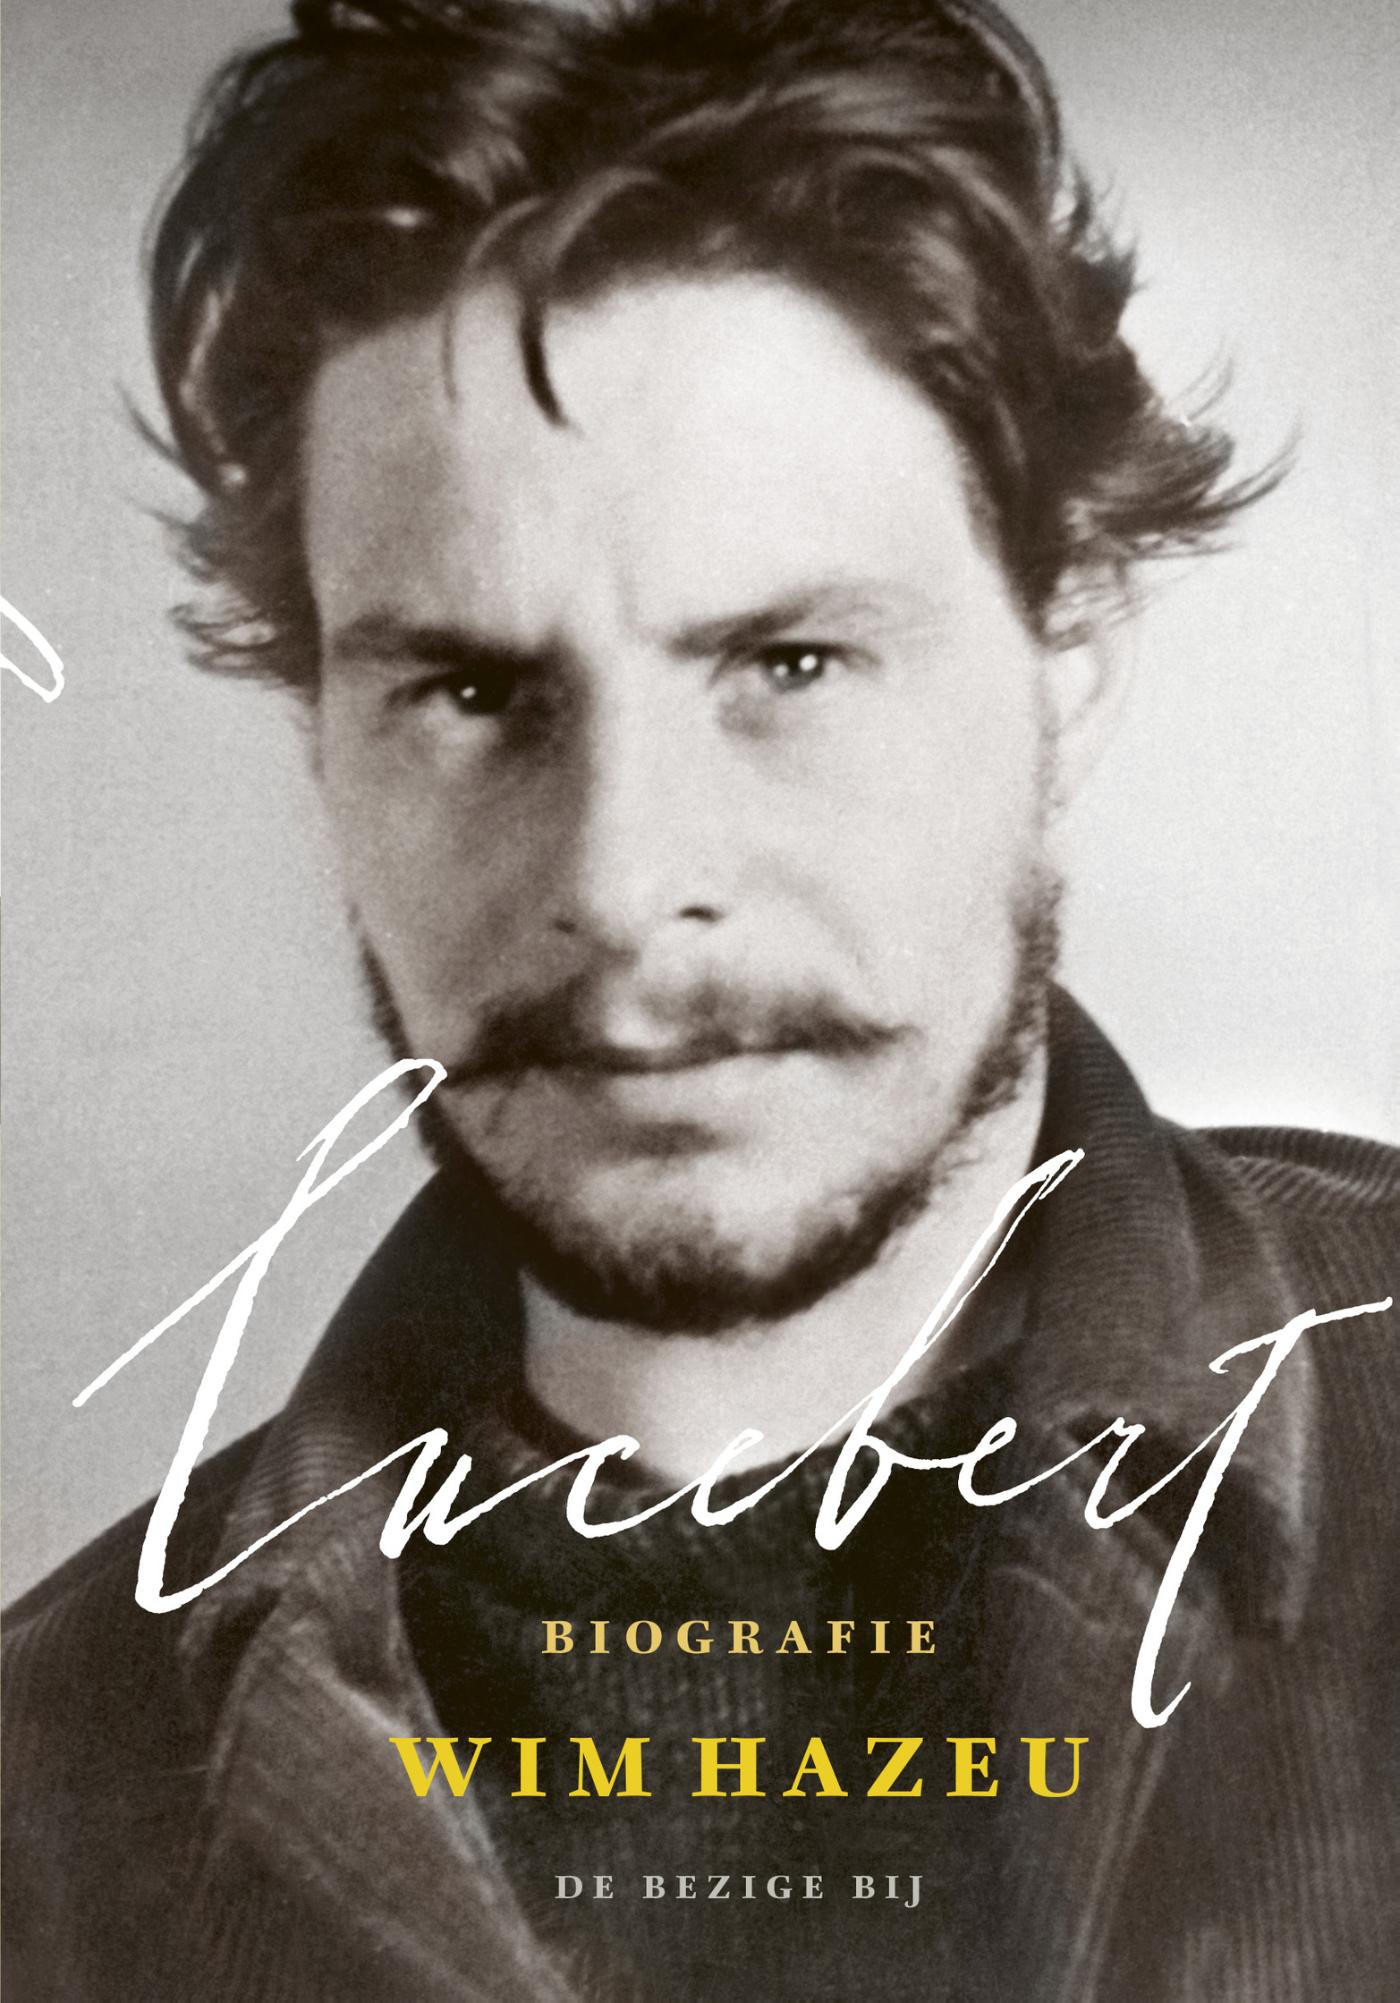 Biografie Lucebert